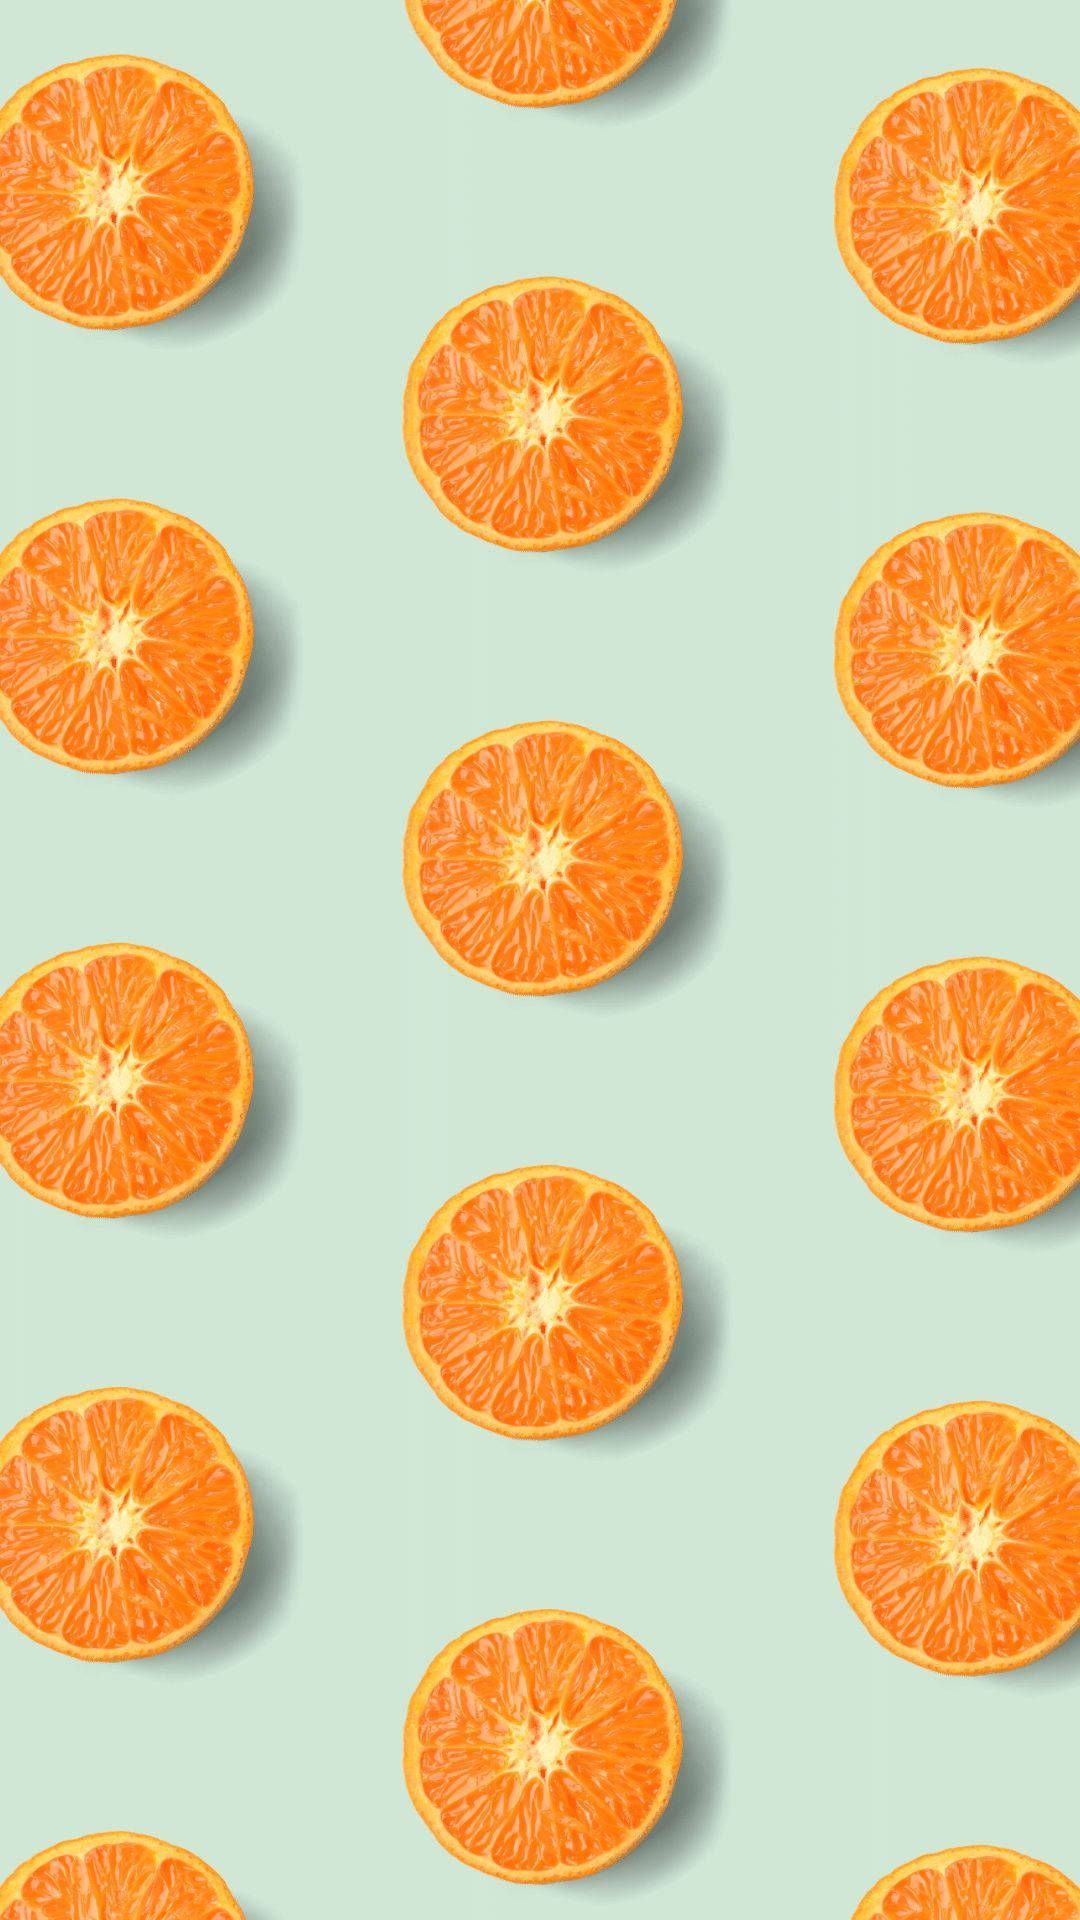 Orange Fruit Wallpaper Full HD, 4K Free to Use